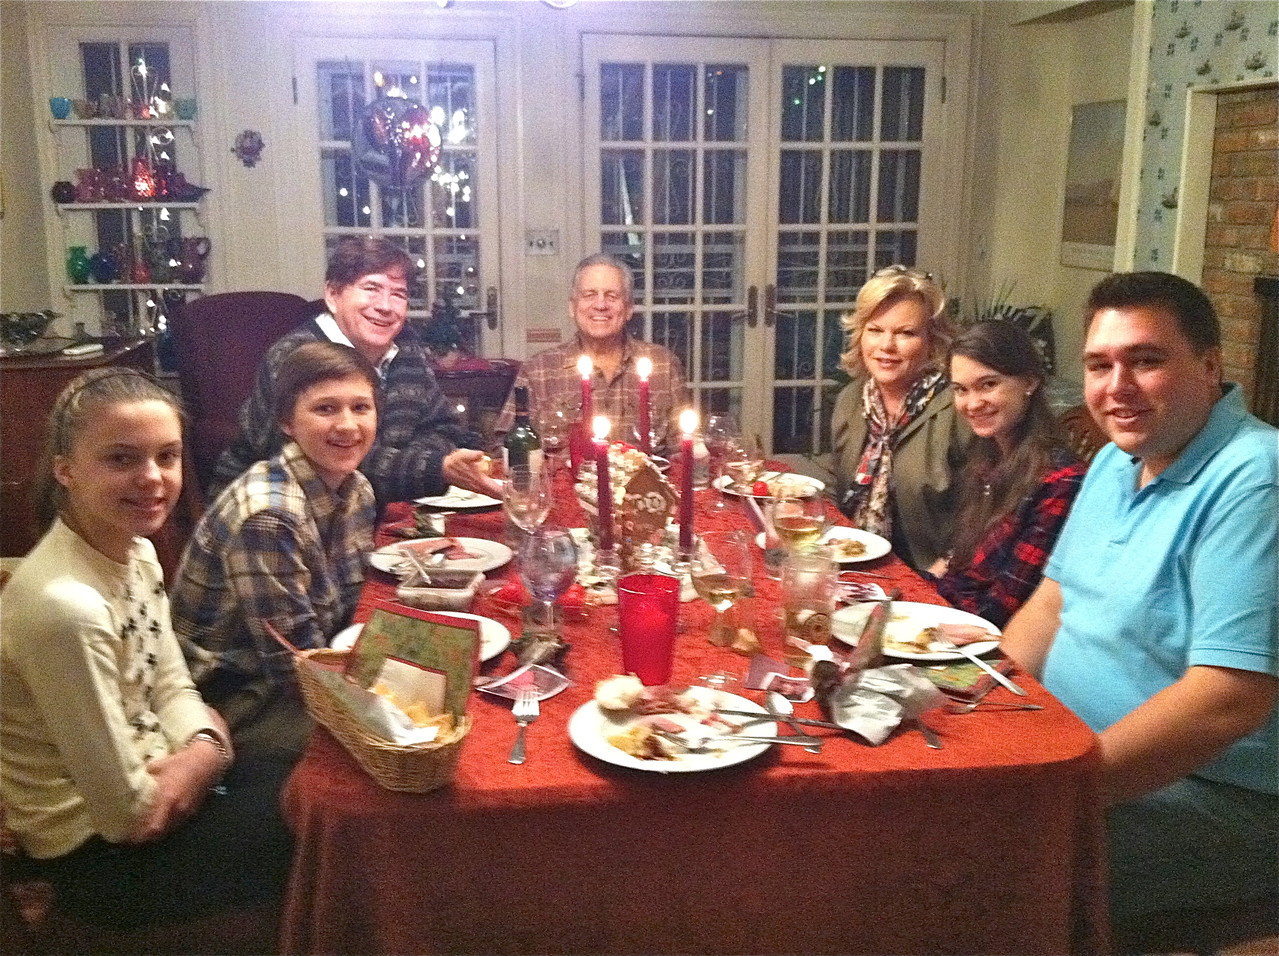 Christmas Day Dinner, 12-25-12  Kate, Jack, John, Stuart, Celeste, Ellie, Greg